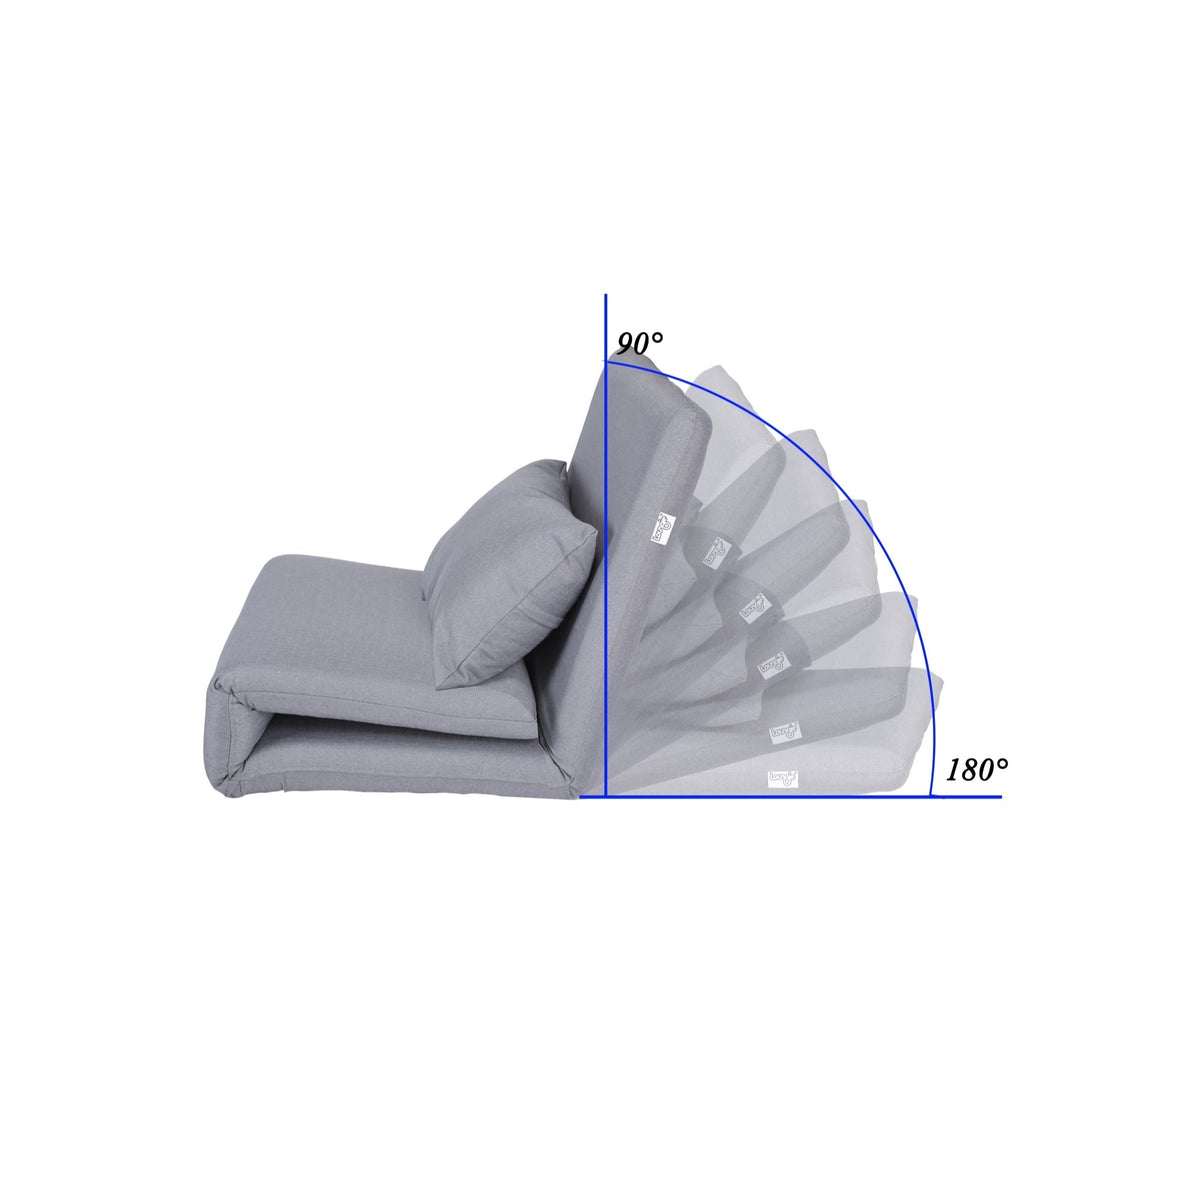 Flip Chair - Relaxie Flip Chair